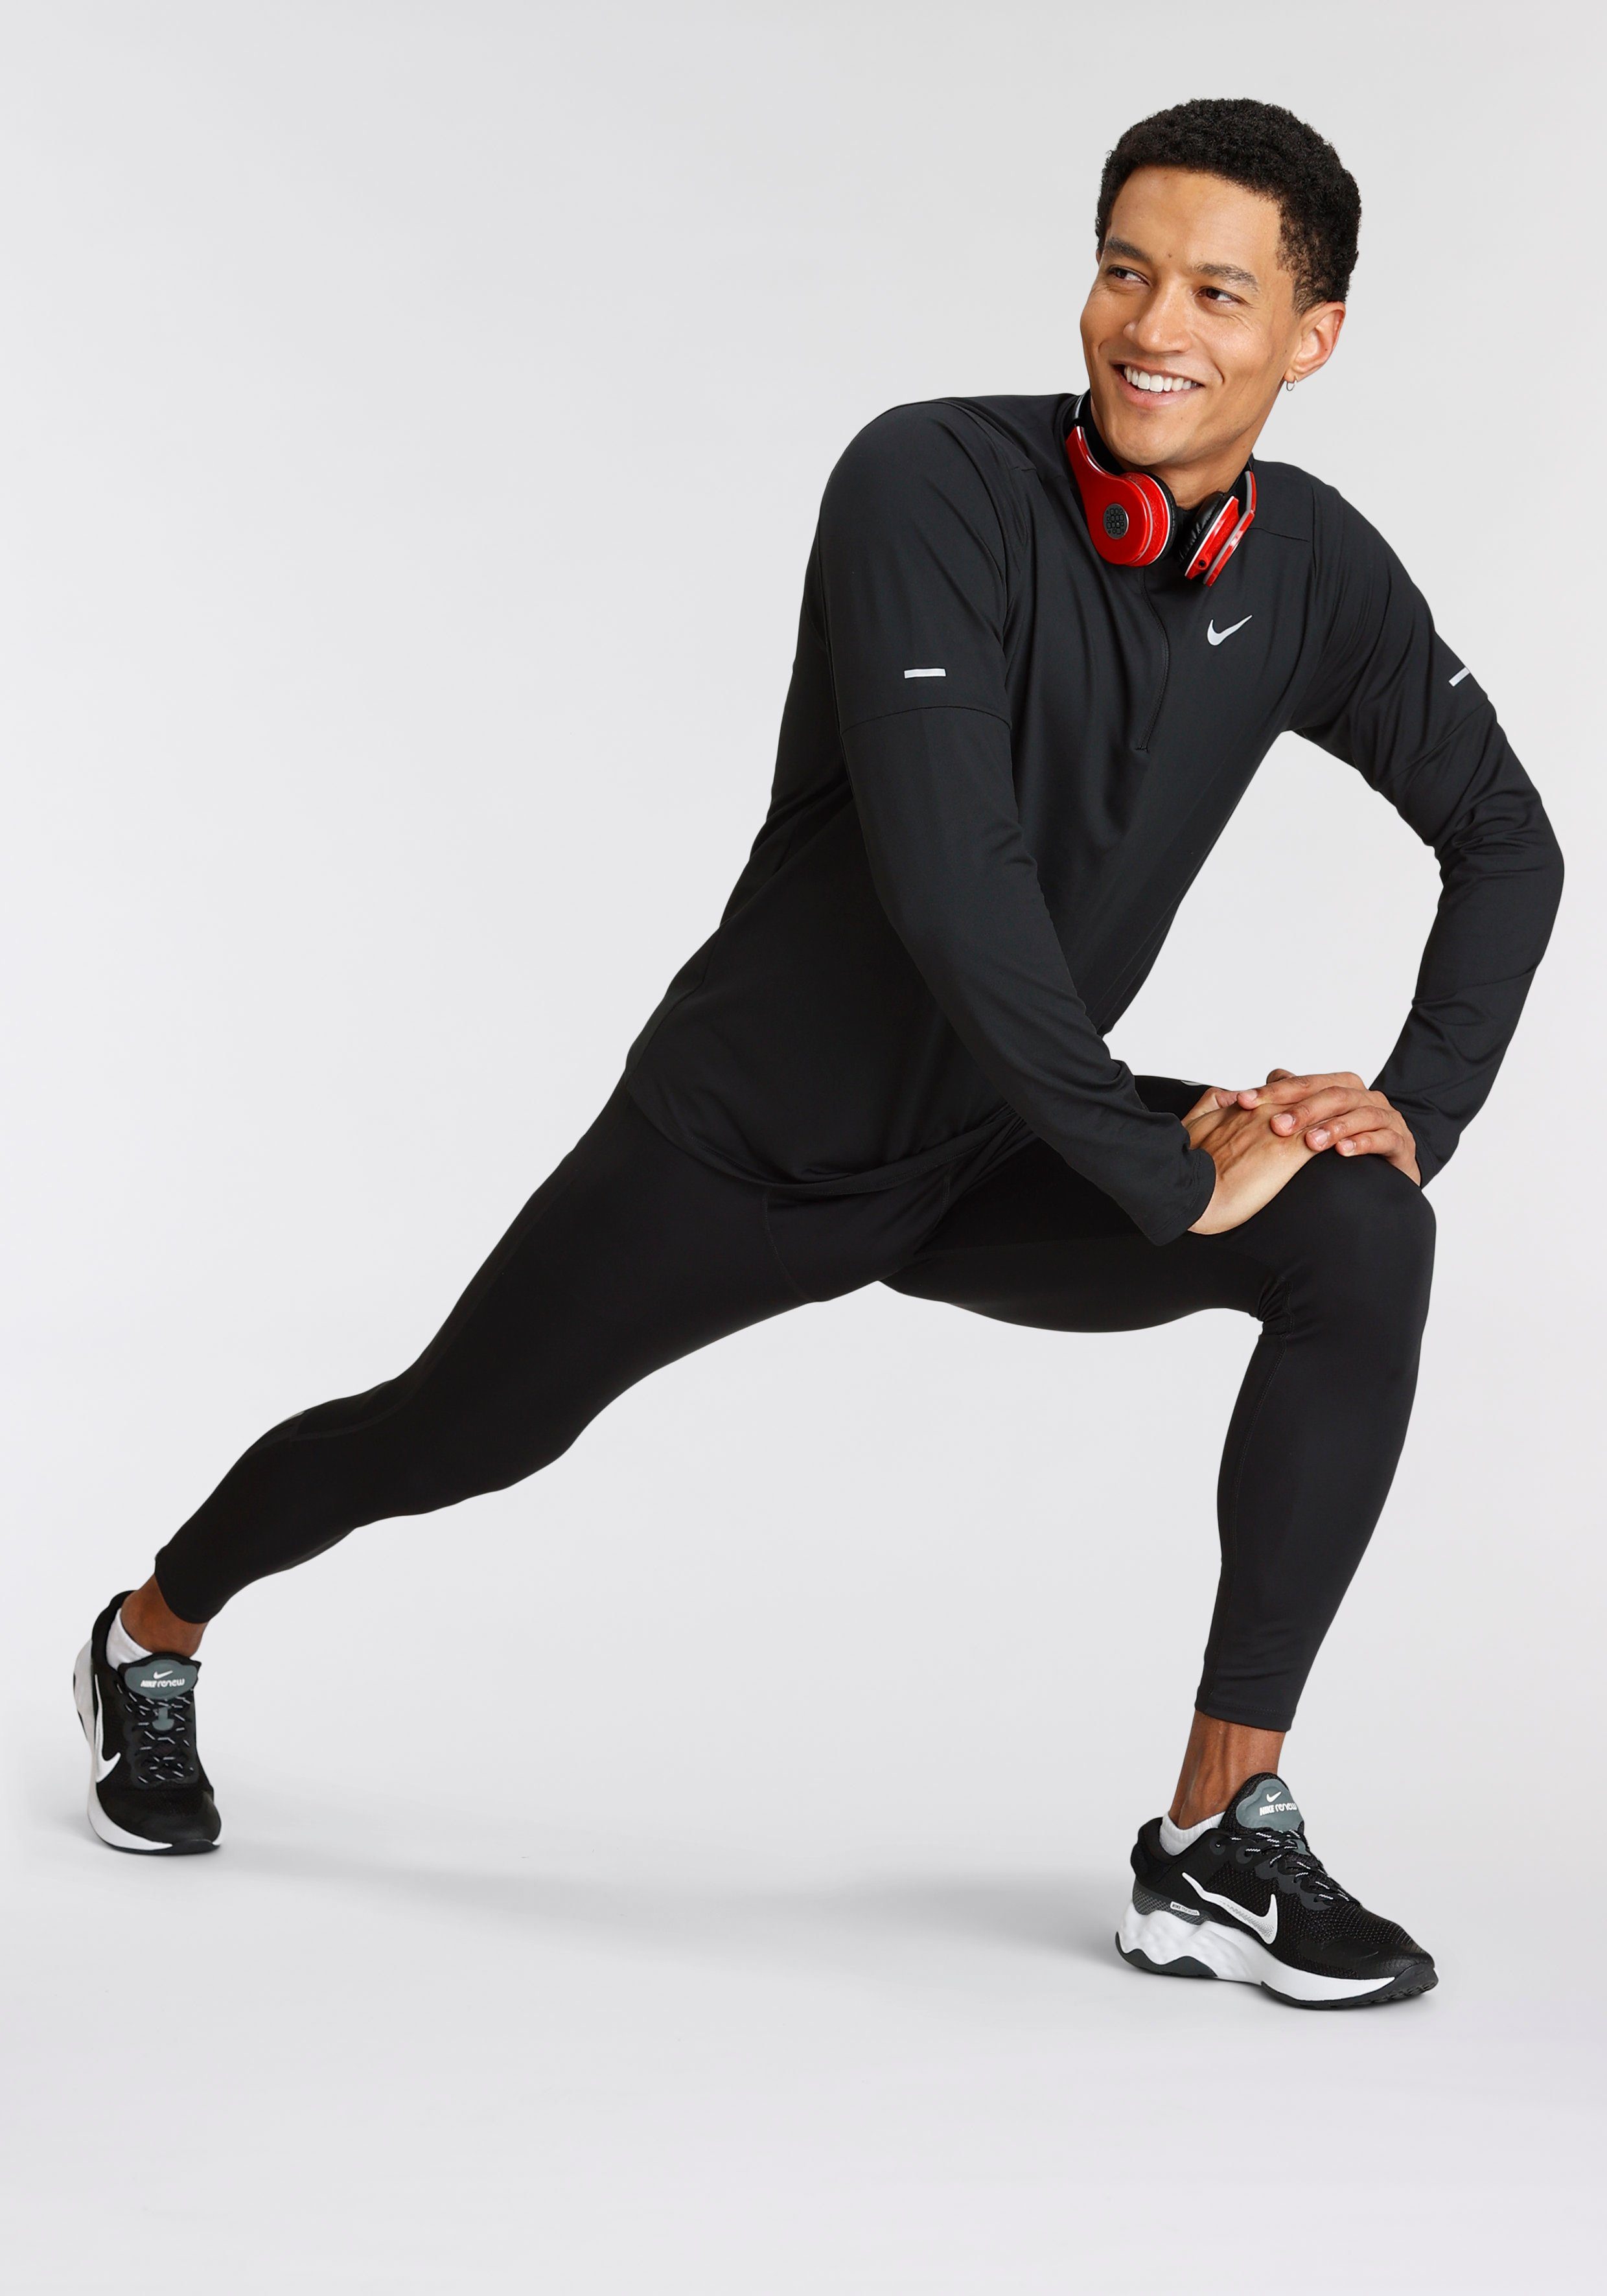 Challenger Running Dri-FIT Tights Men's Nike schwarz Lauftights